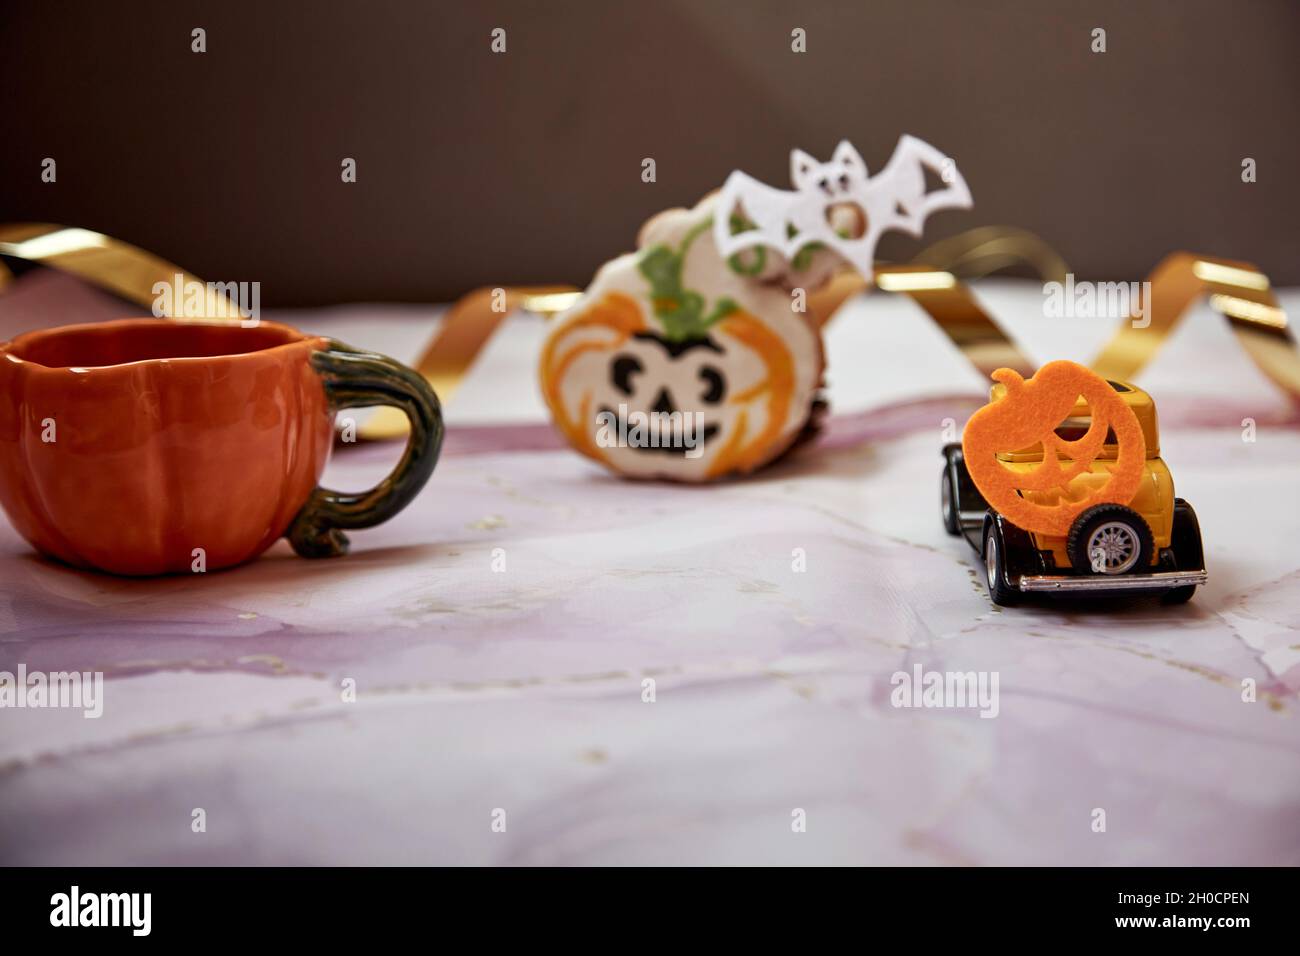 Décors d'Halloween avec mug à motif citrouille orange, biscuit à la main, citrouilles feulées et voiture rétro jaune. Joyeux Halloween concept. Copier l'espace. Pho de haute qualité Banque D'Images